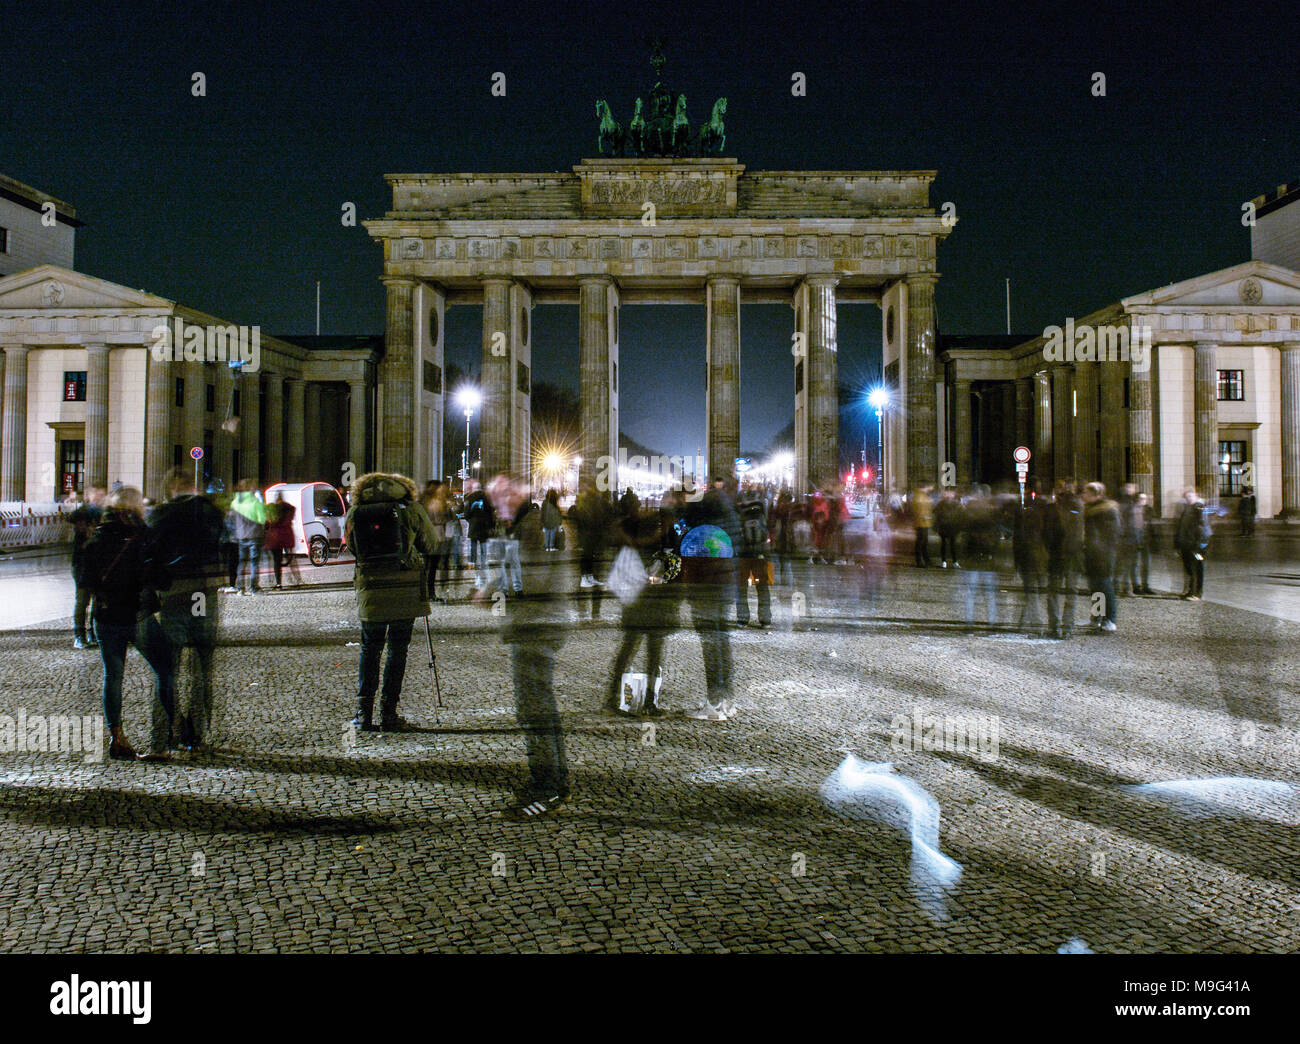 24 März 2018, Deutschland, Berlin: Das Brandenburger Tor ist nicht in der Nacht beleuchtet. Dies war innerhalb einer Aktion namens 'Earth Hour', wo die Lampen ausgeschaltet wurden organisiert. Die Umweltorganisation WWF will das Bewusstsein für den Klimawandel schärfen. Foto: Paul Zinken/dpa Stockfoto